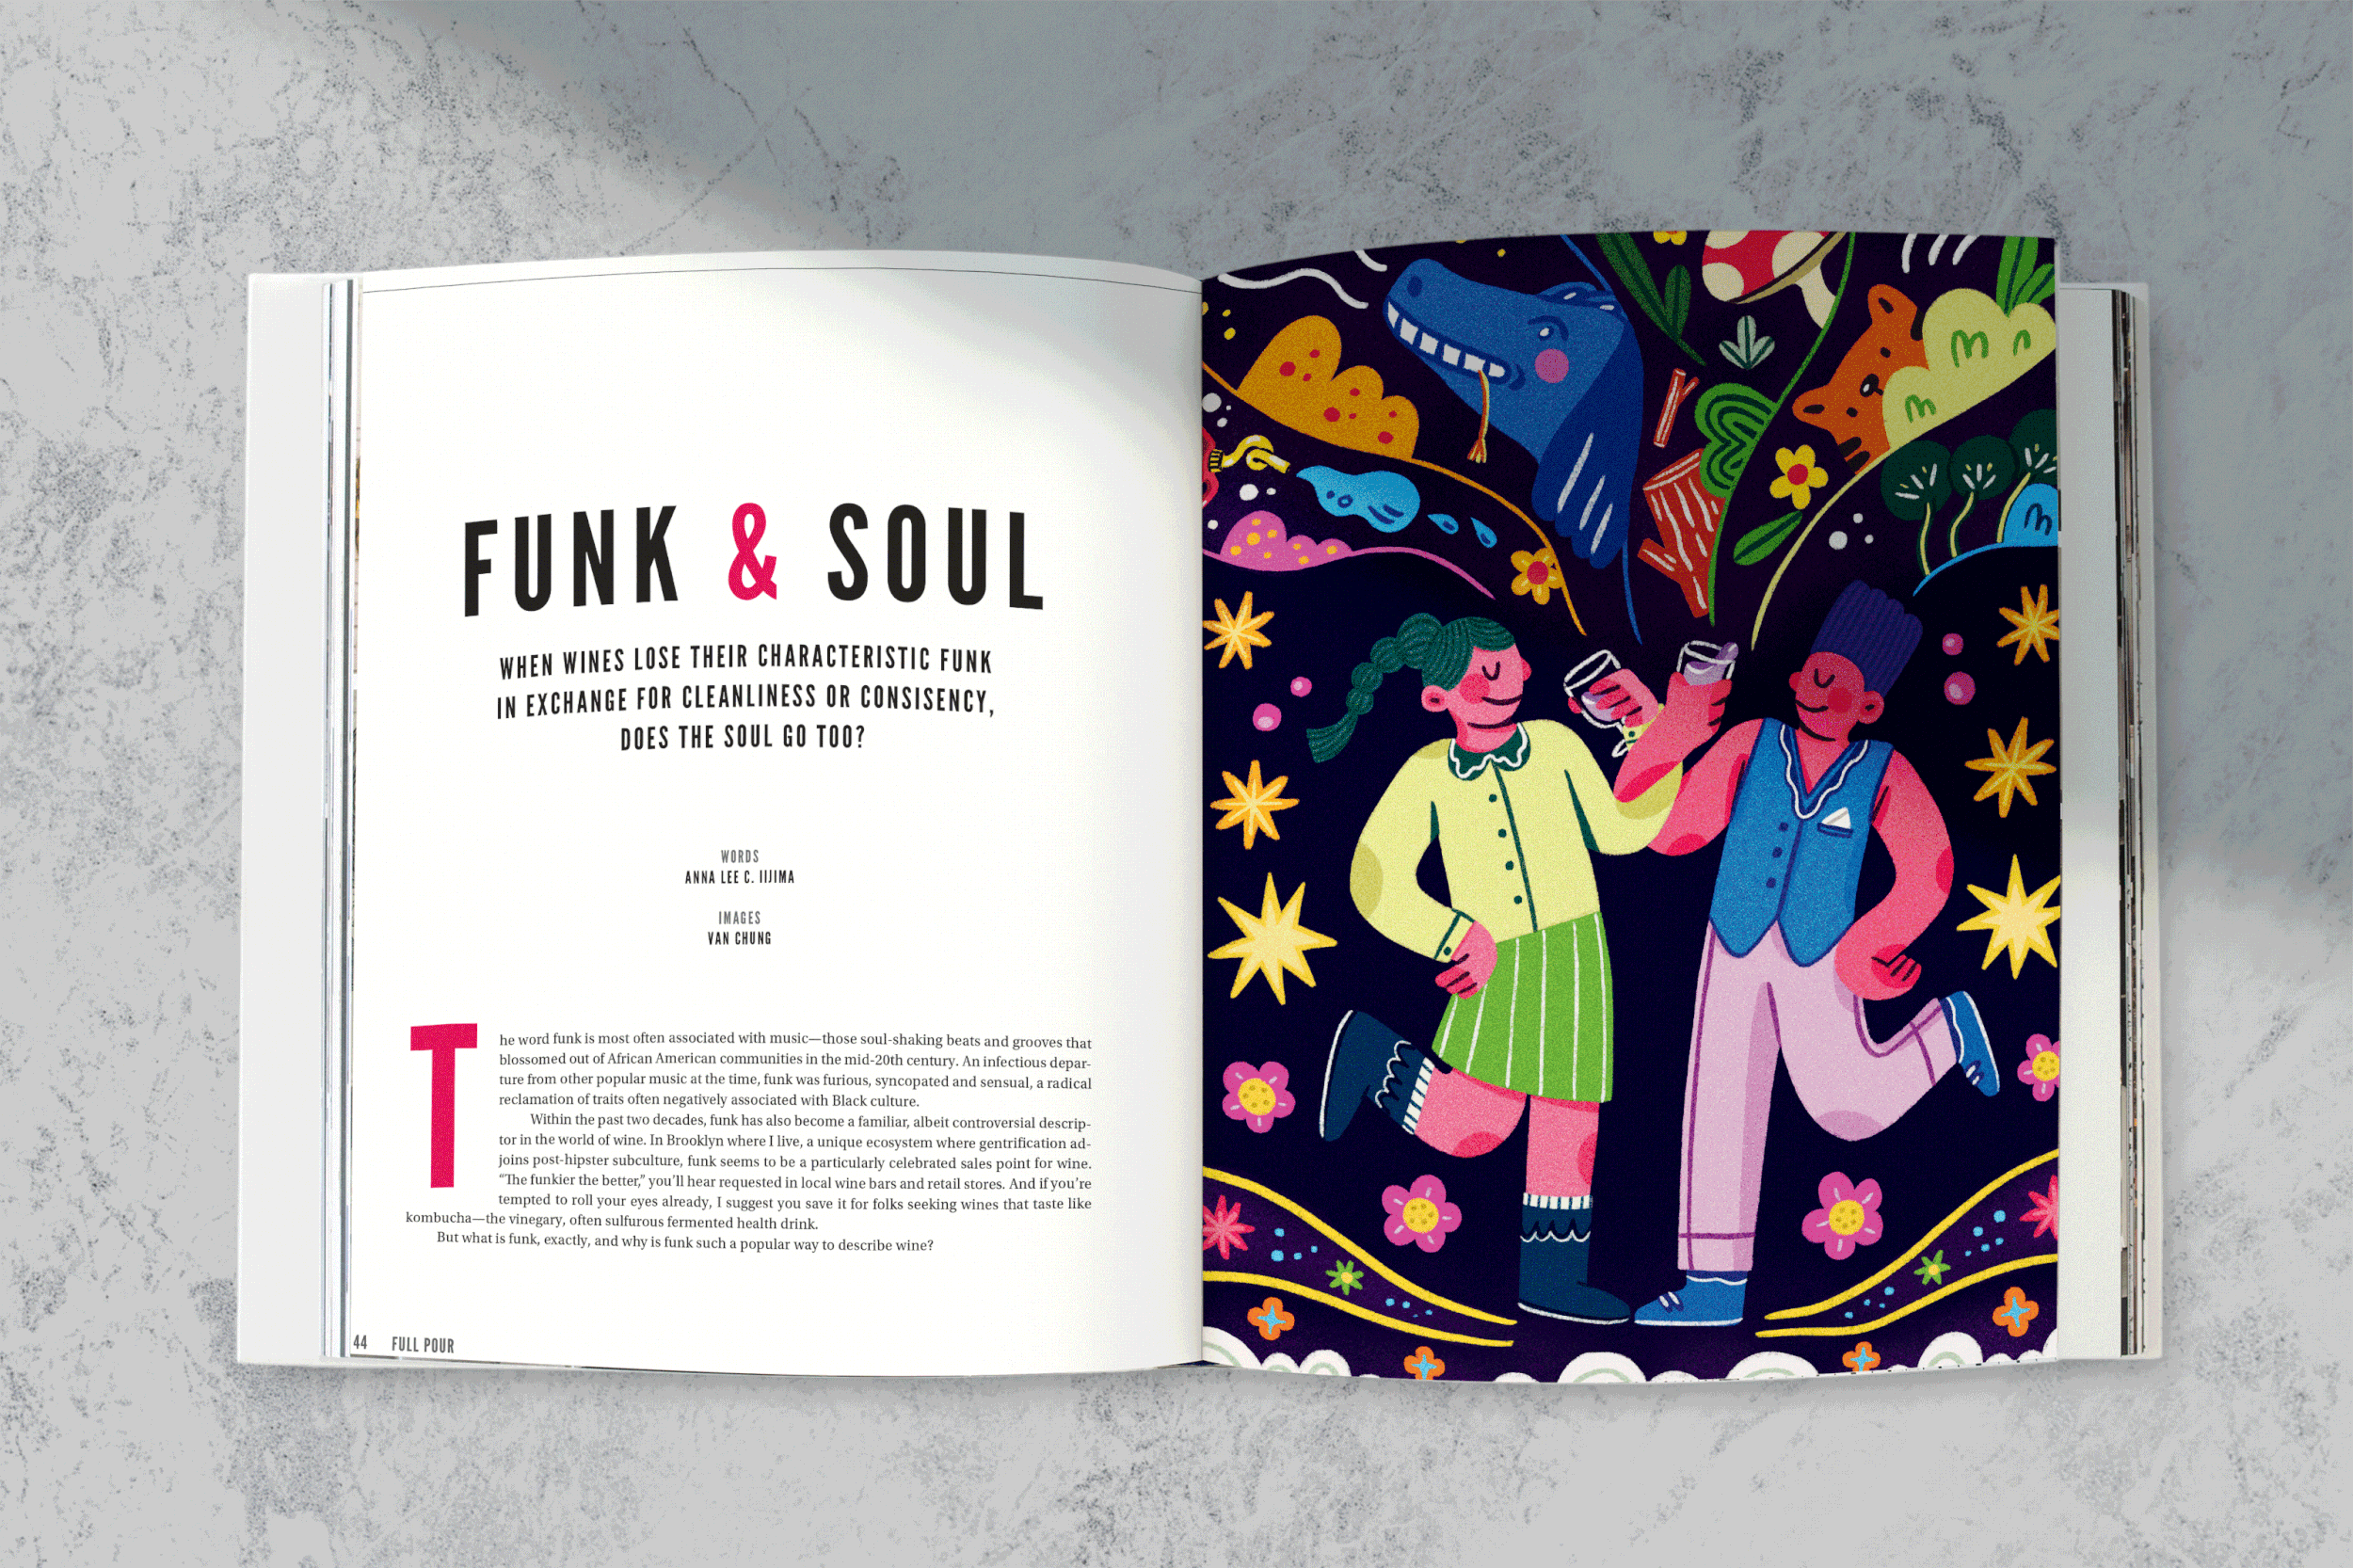 Full Pour - "Funk & Soul" on print